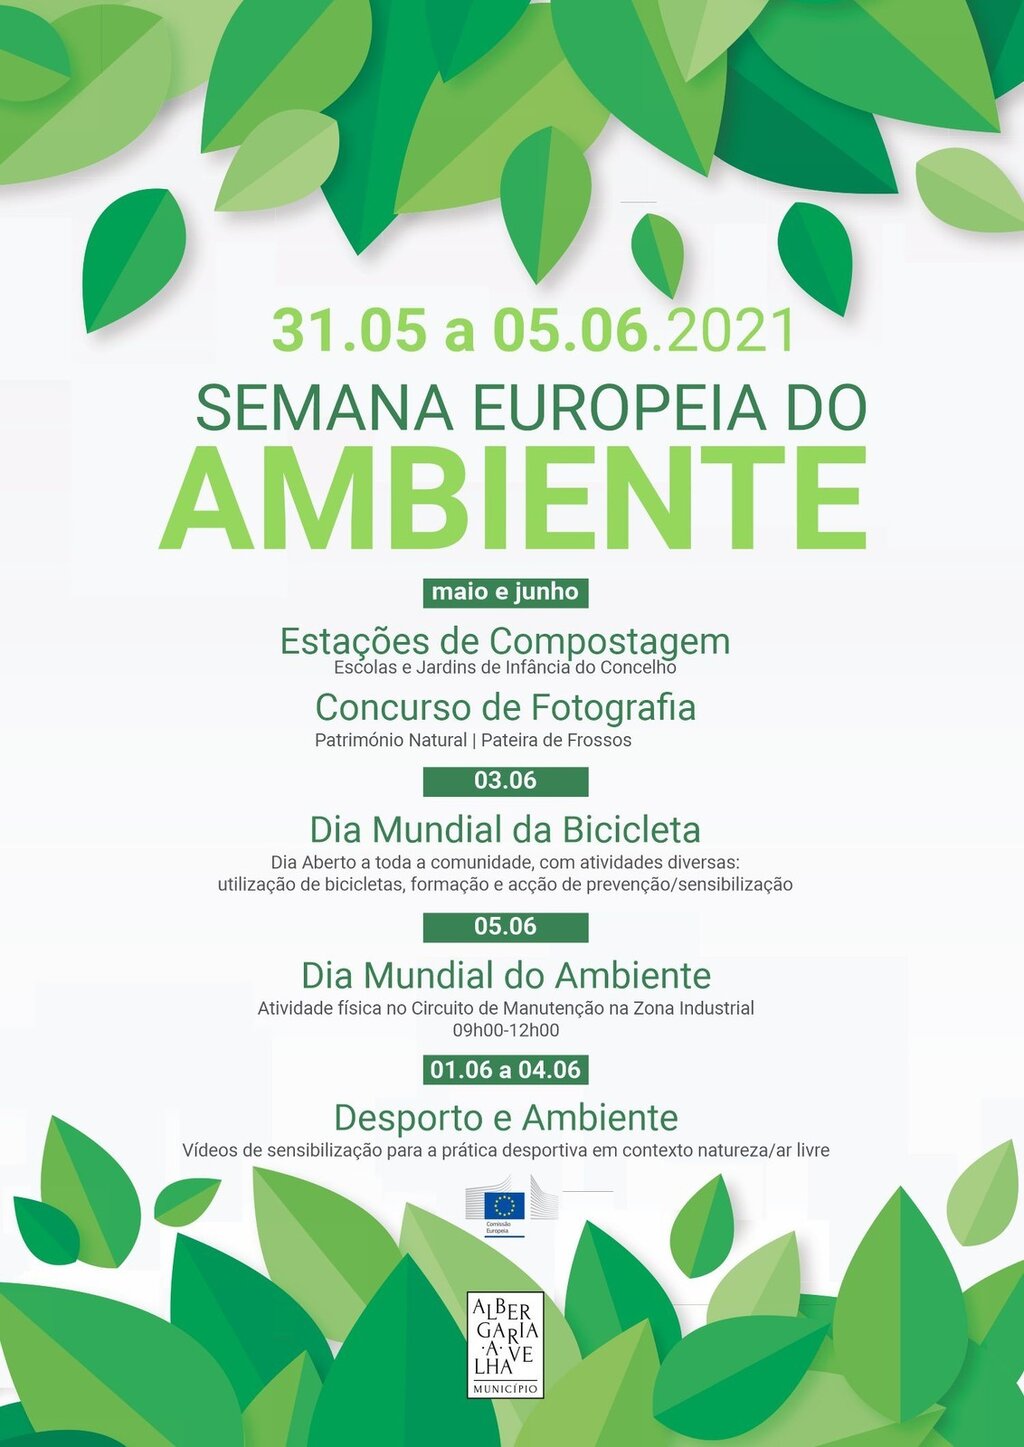 Semana Europeia do Ambiente